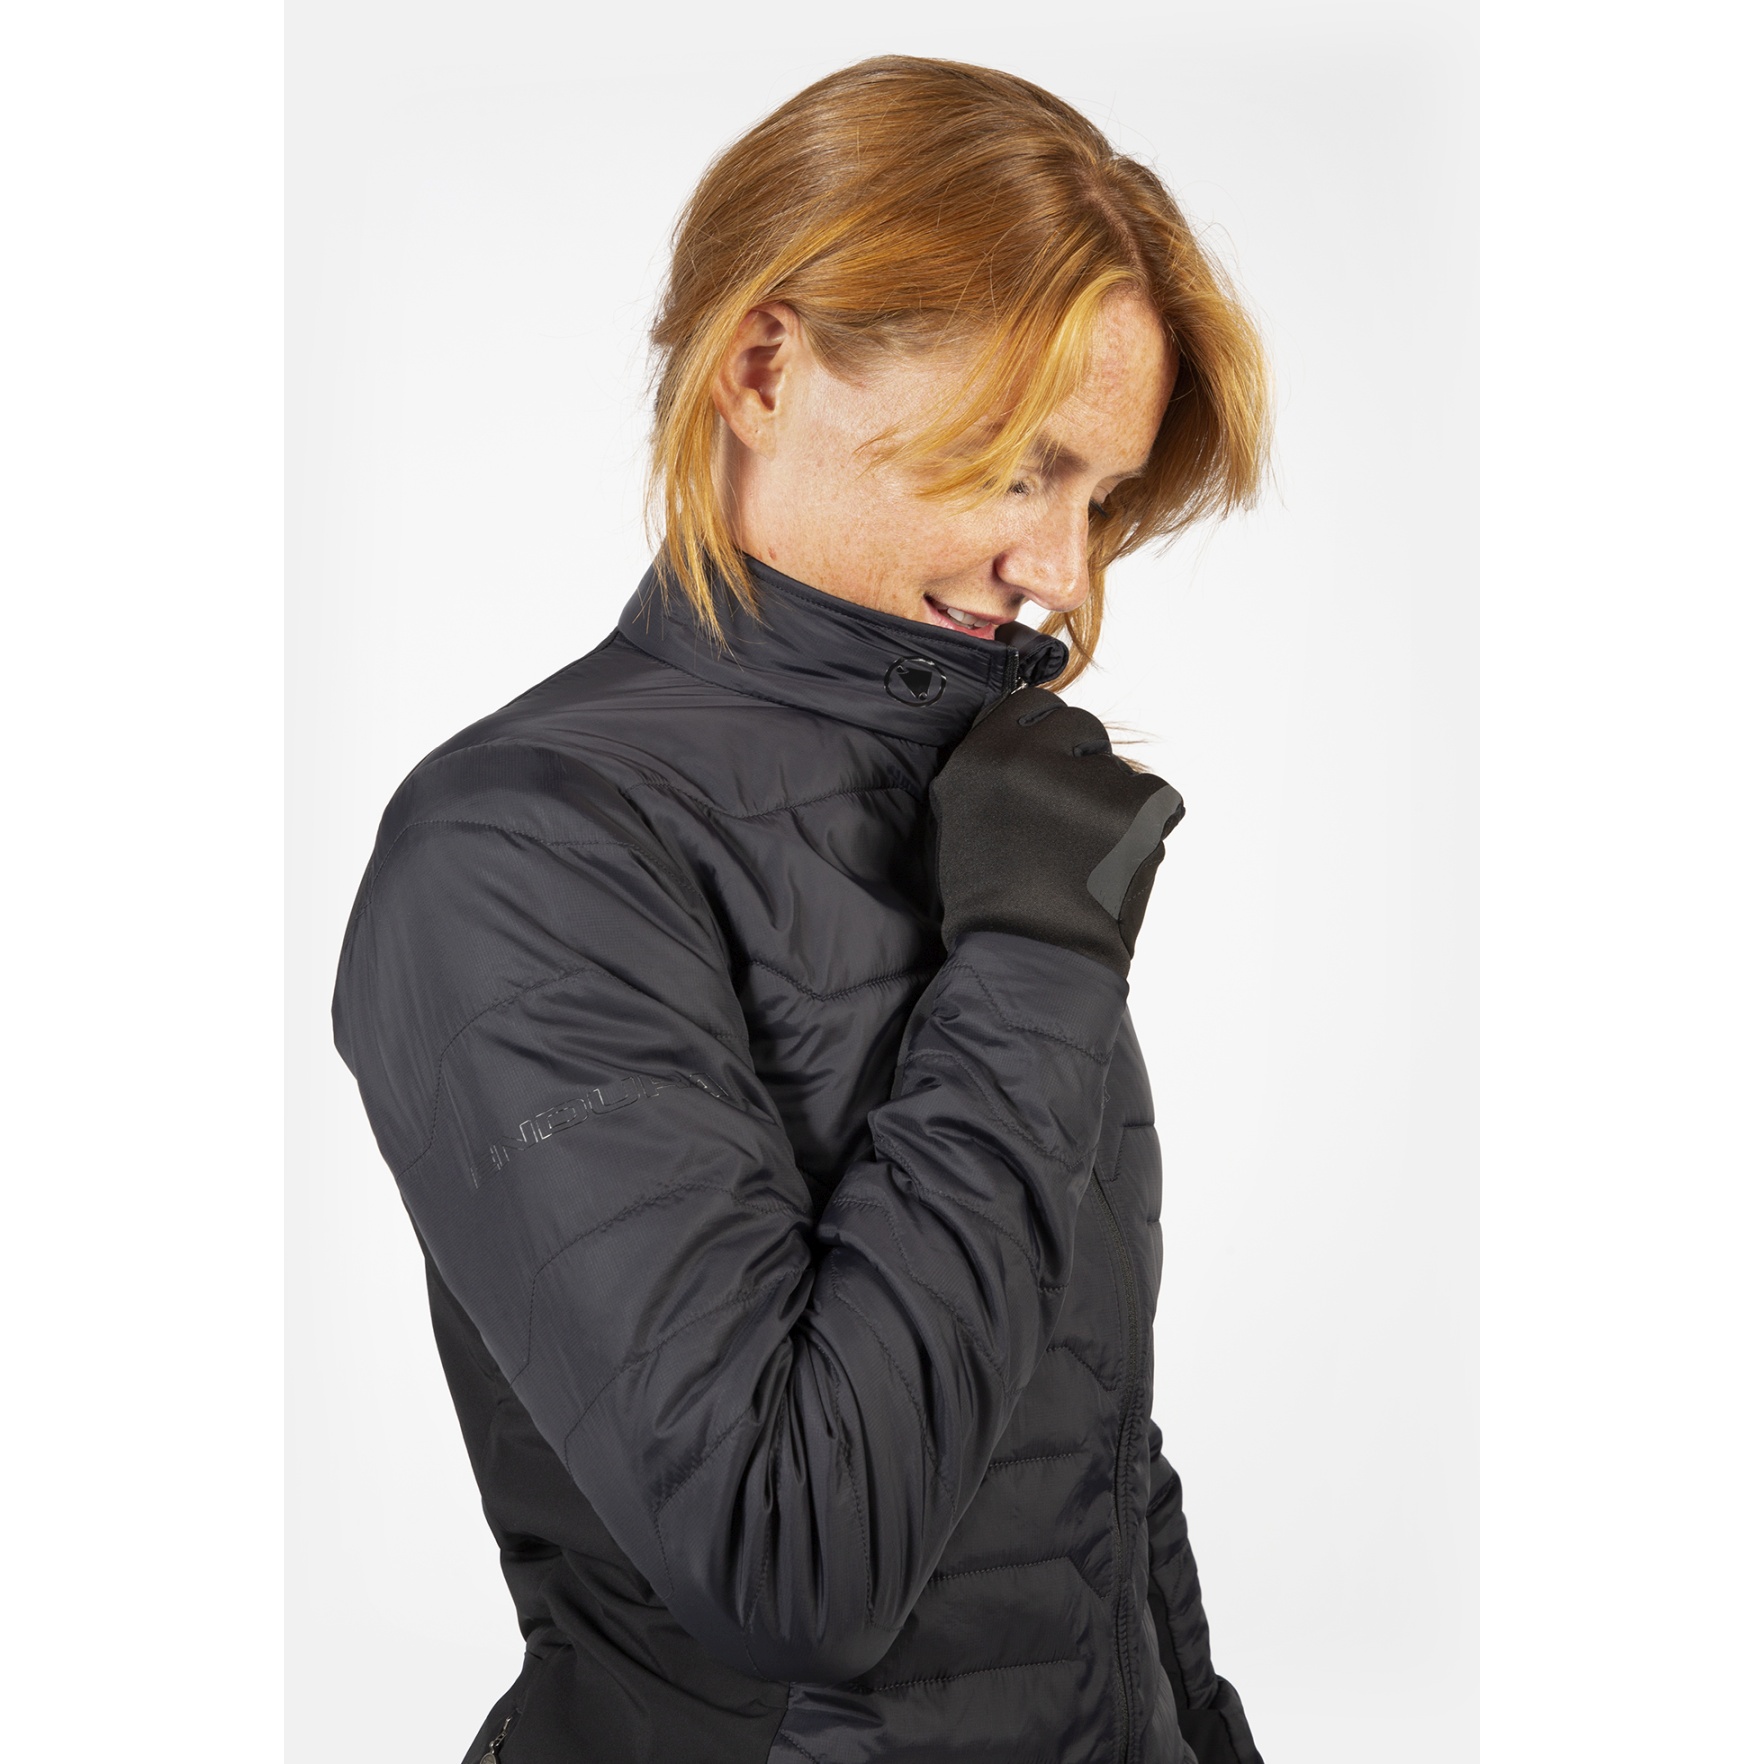 SL Damen schwarz Jacke BIKE24 Pro | PrimaLoft® Endura -